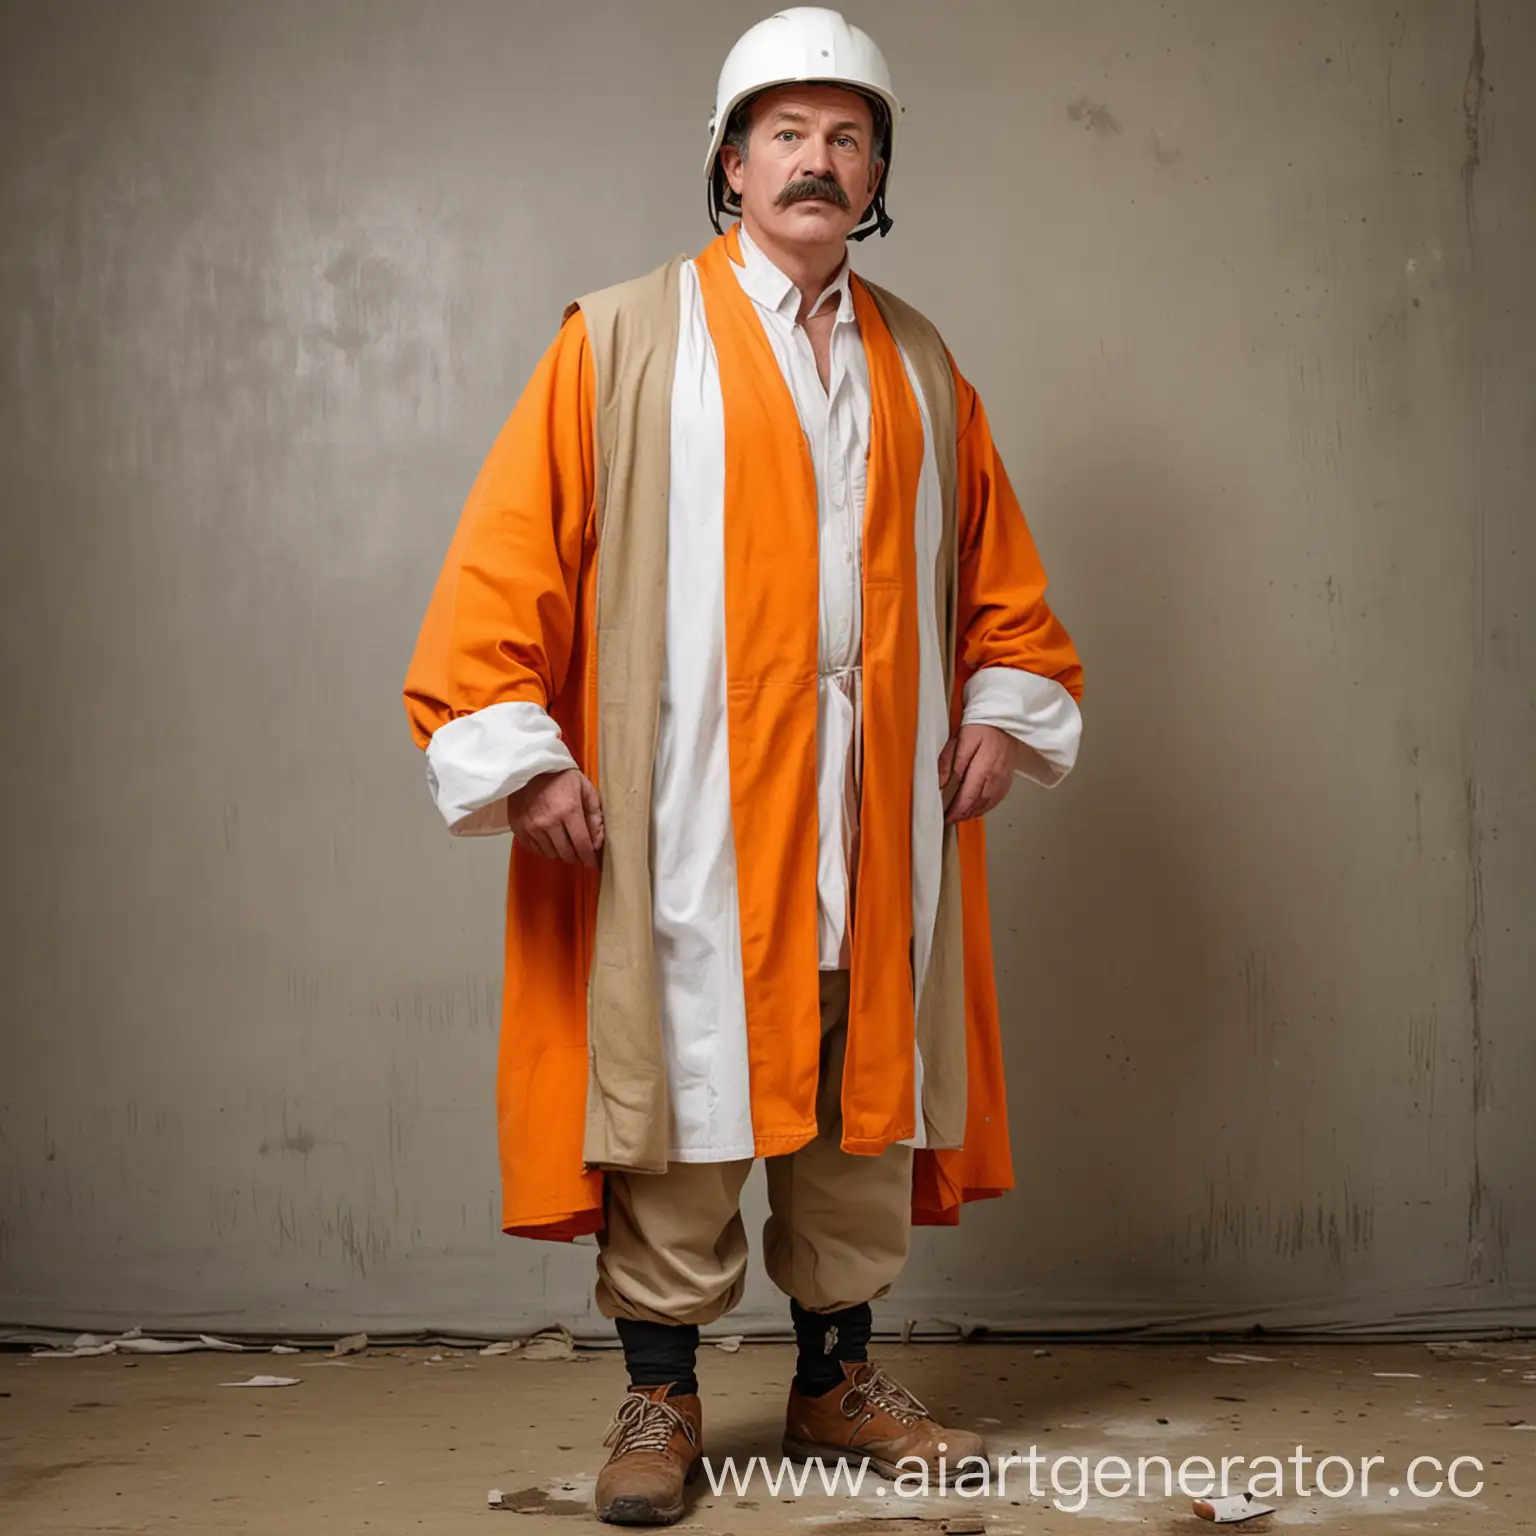 мужик средних лет, с усами, стоит в полный рост, в белой каски, оранжевой жилетки, грязная обувь и роба